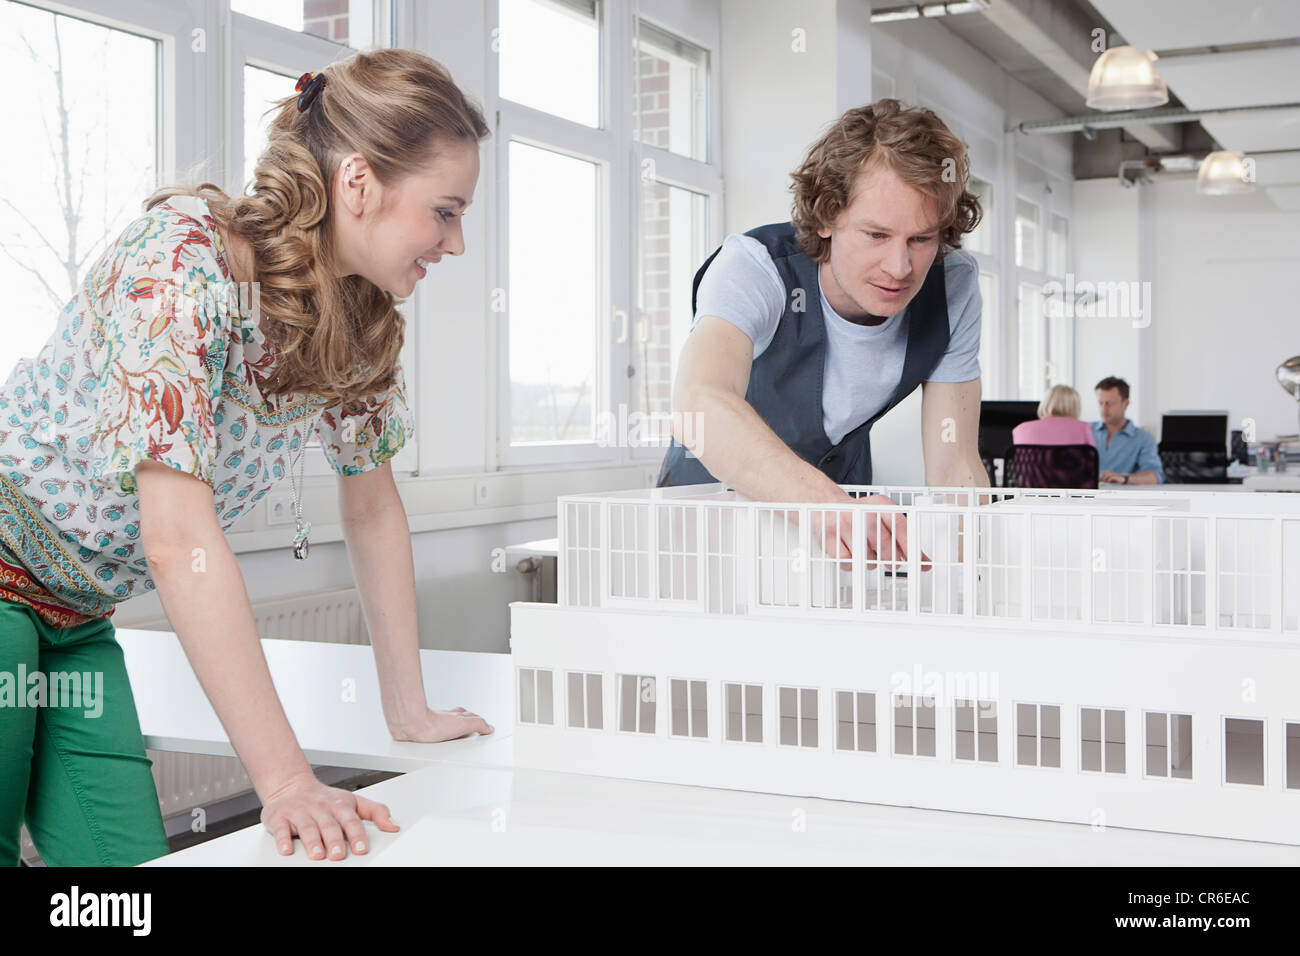 Deutschland, Bayern, München, Architekten betrachten Architekturmodell, im Hintergrund arbeitenden Kolleginnen und Kollegen Stockfoto